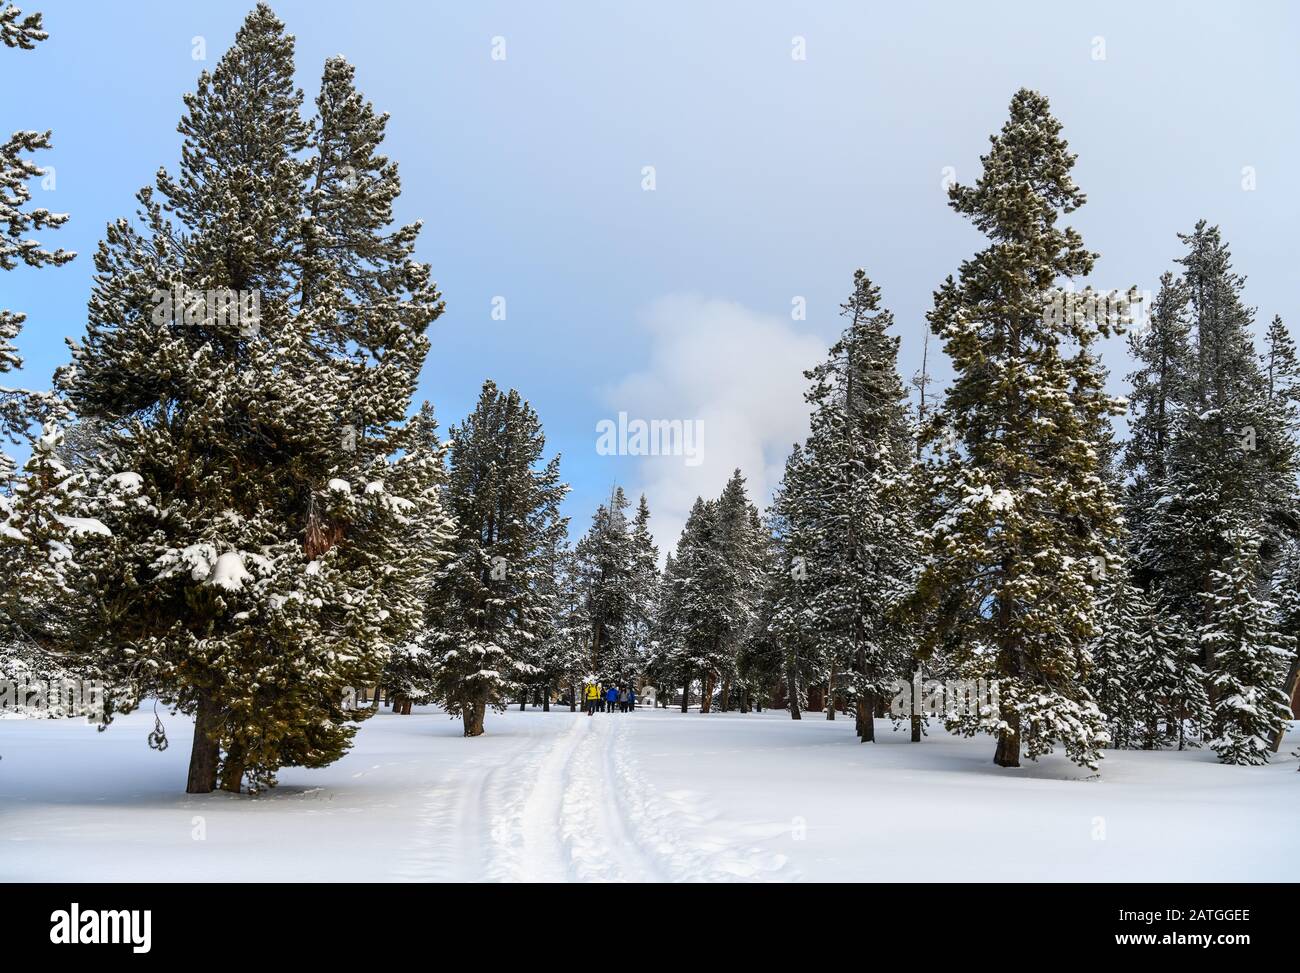 In inverno i visitatori possono fare escursioni con le racchette da neve nella foresta. Parco Nazionale Di Yellowstone, Wyoming, Stati Uniti. Foto Stock